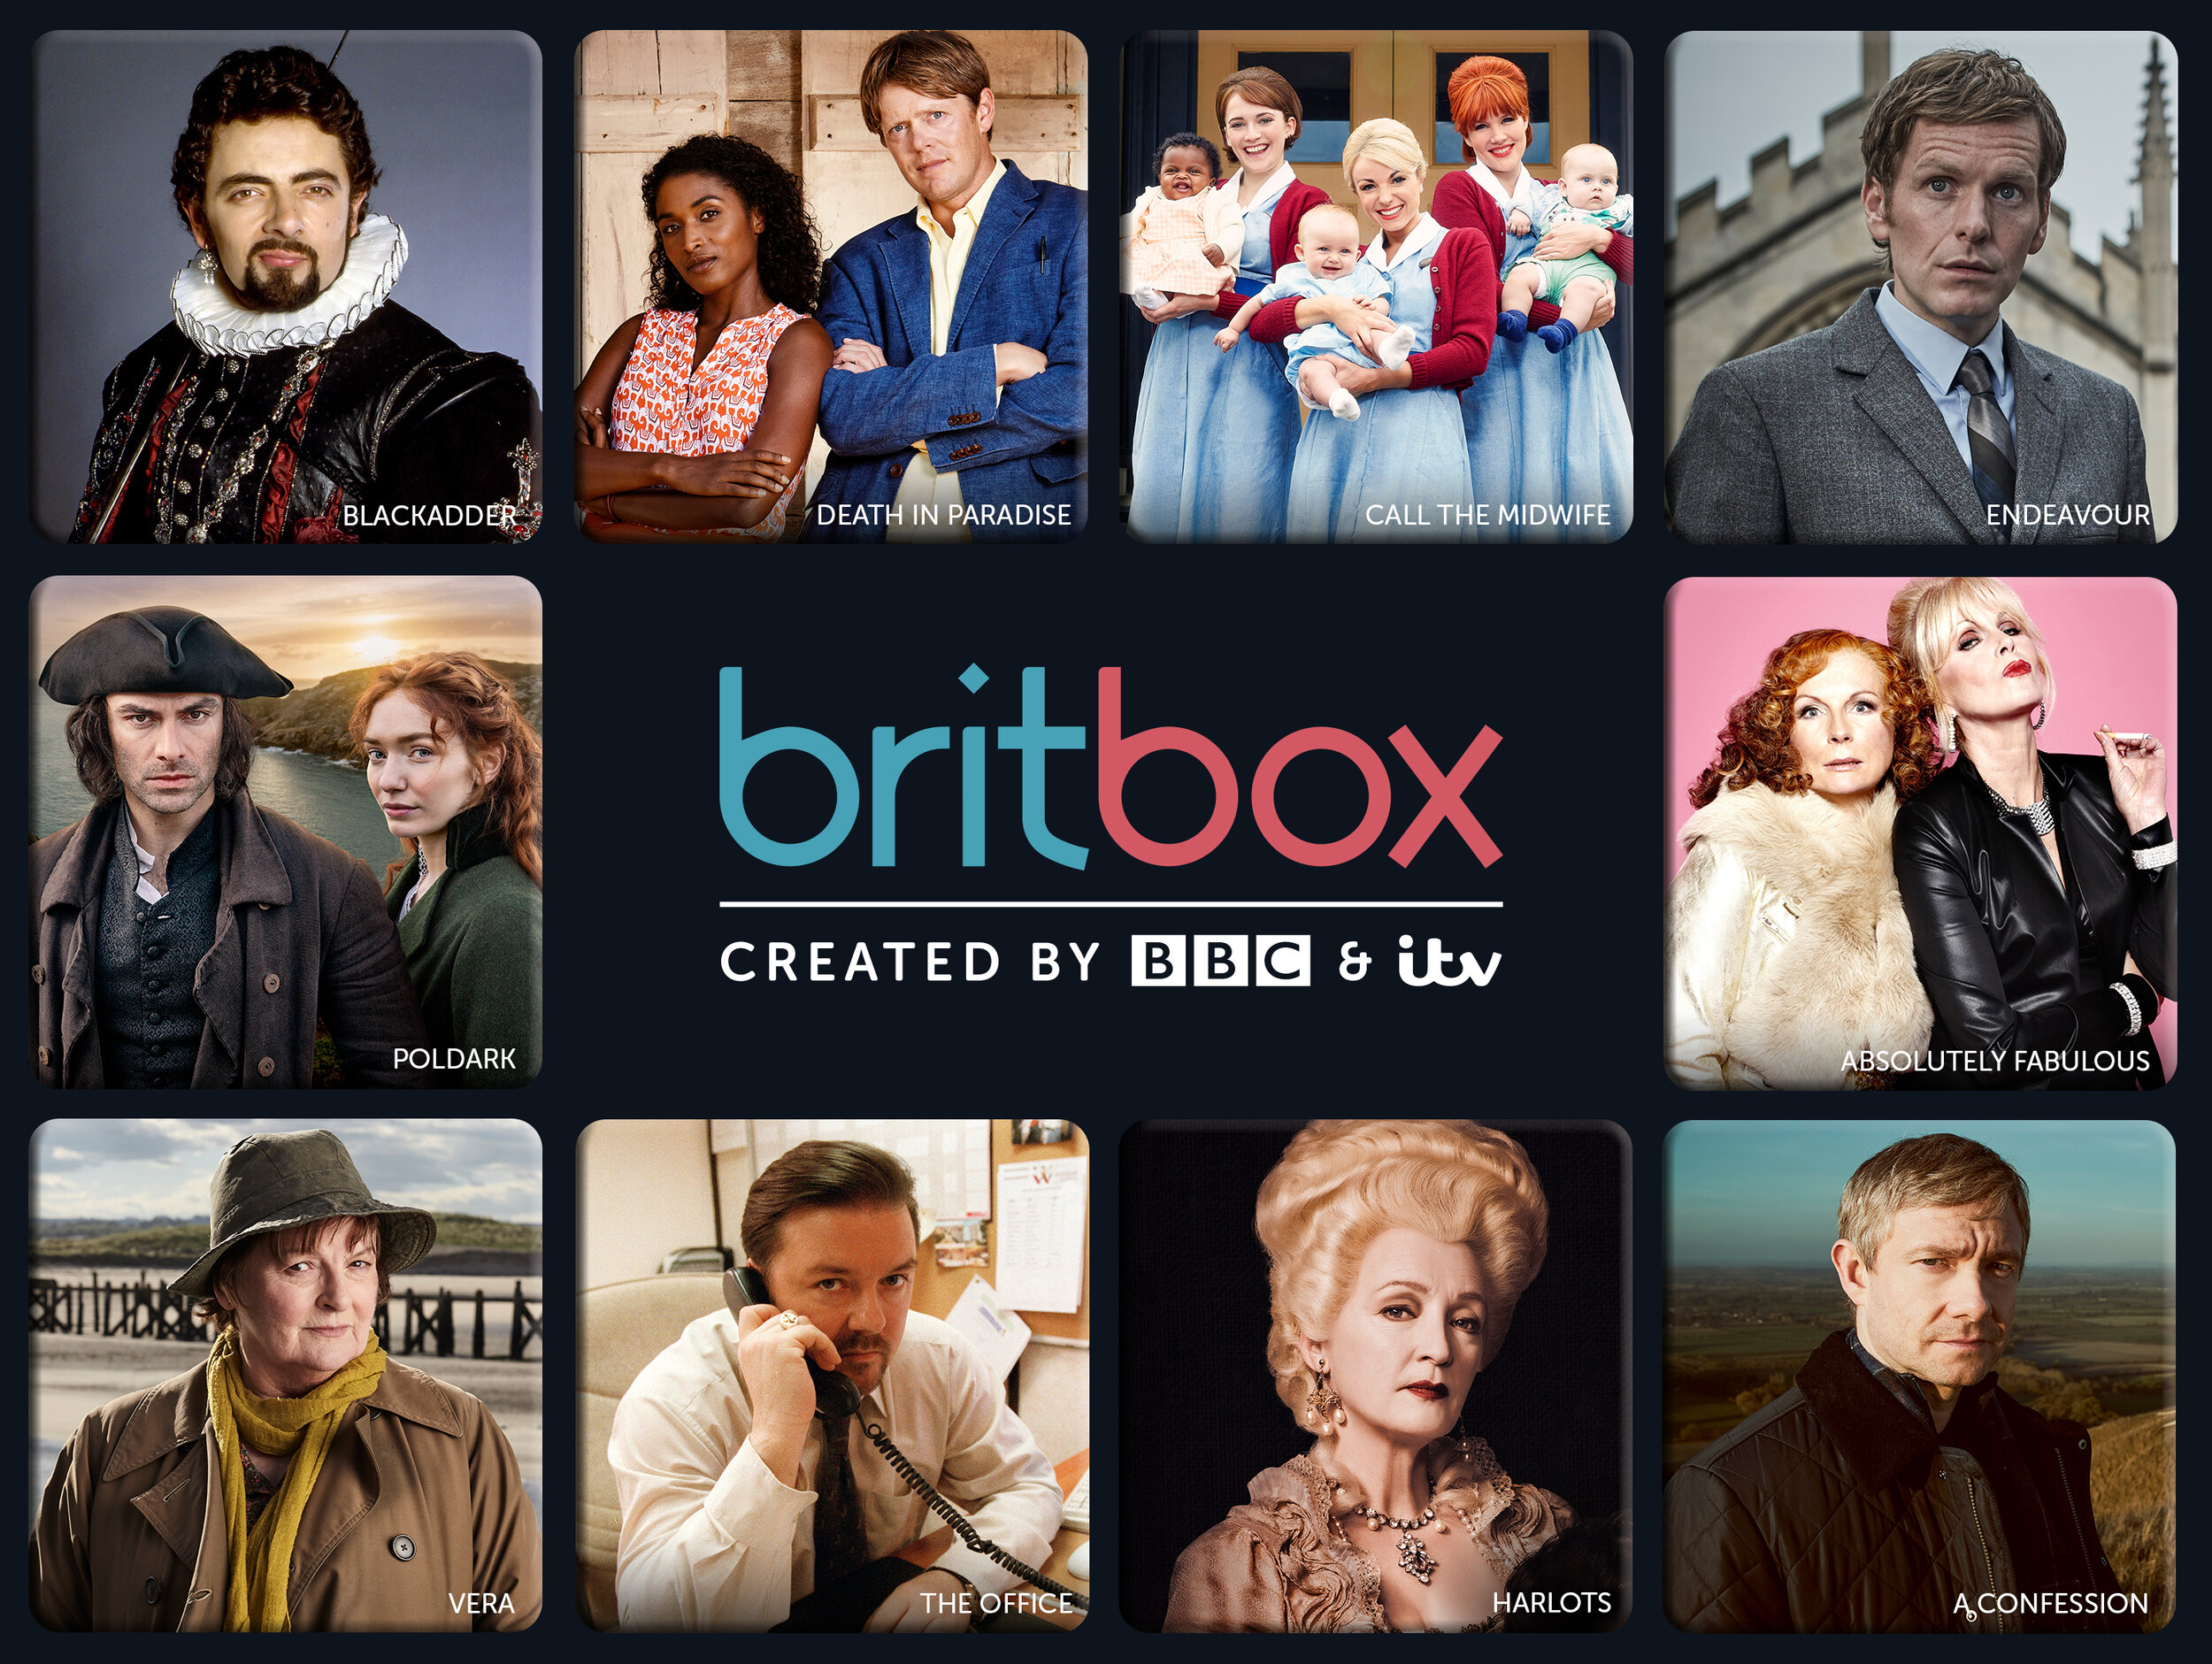   BritBox  image - BBC 